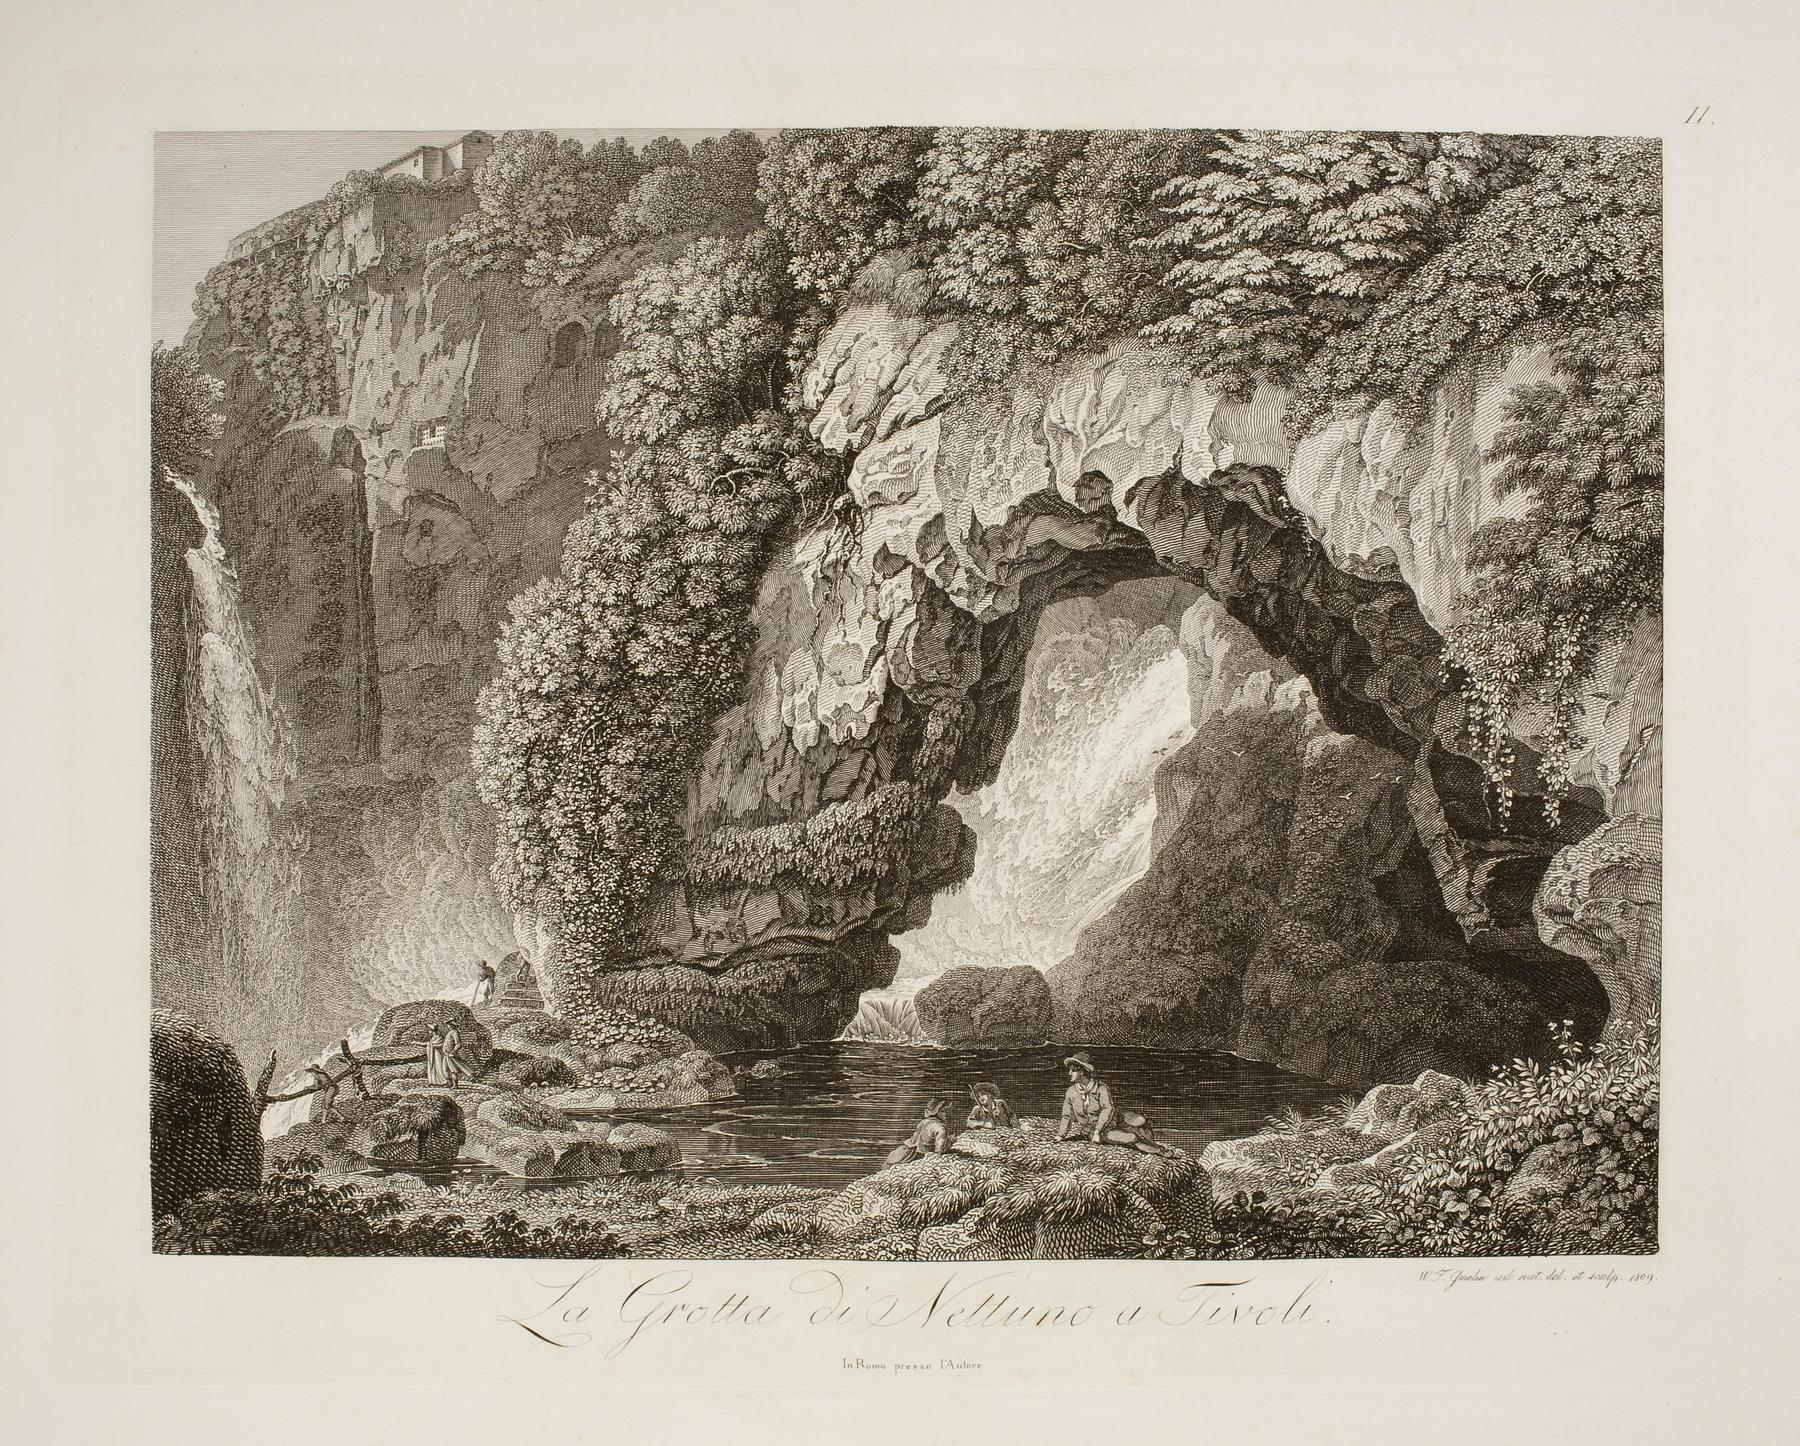 La Grotta di Nettuno i Tivoli, E591,2